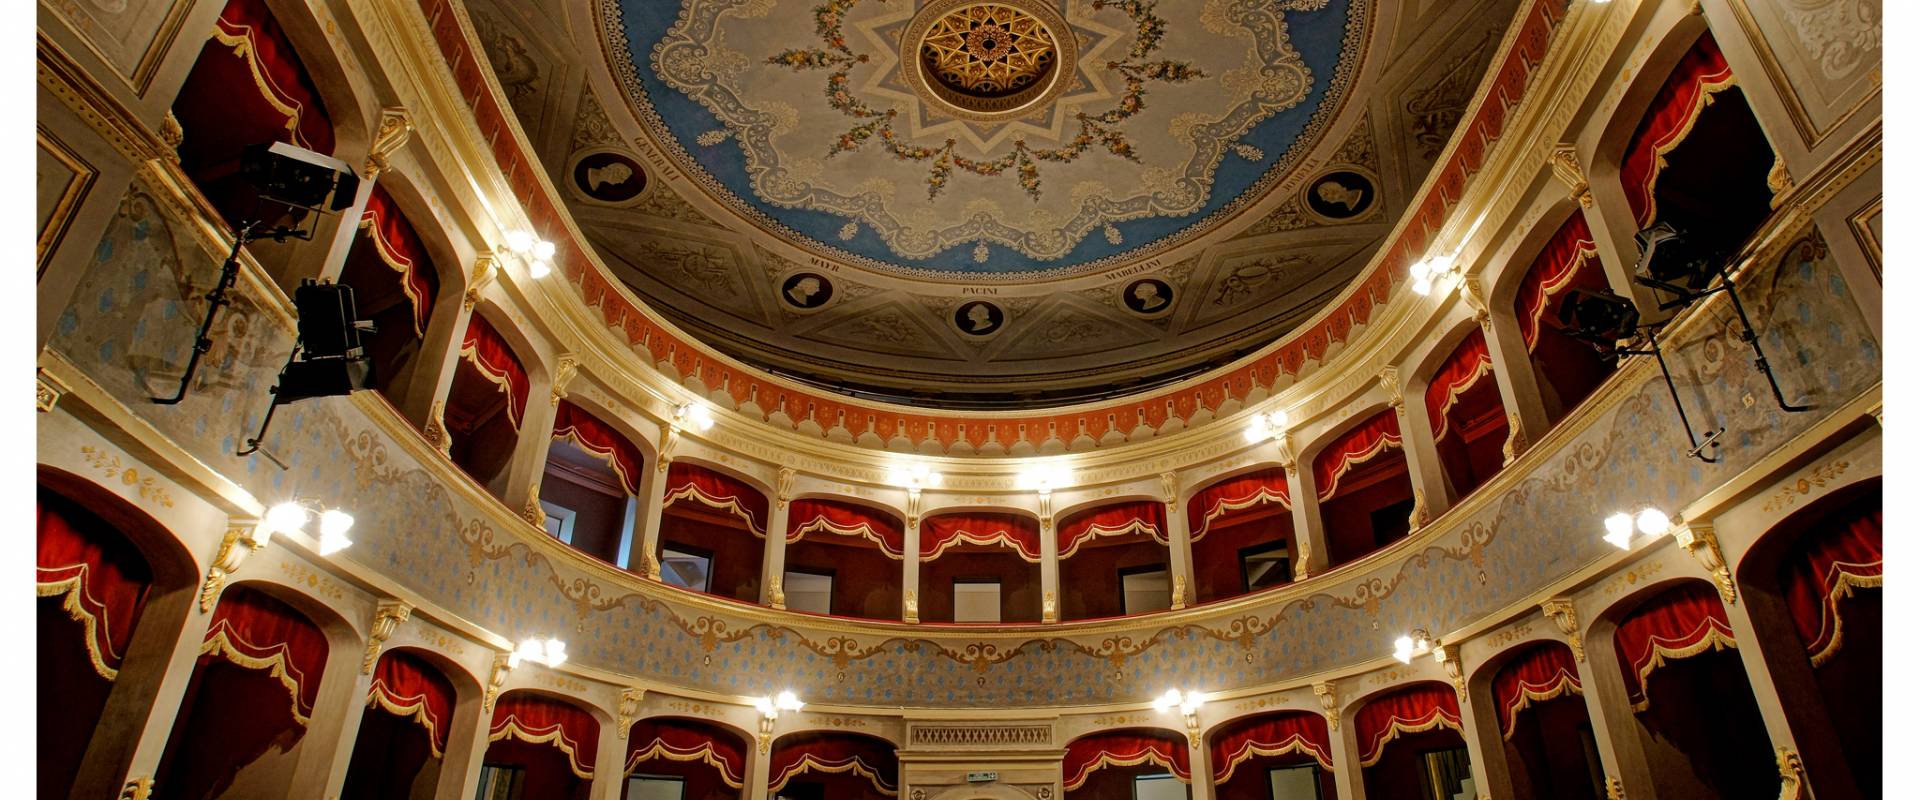 Teatro mEnrico Petrella photo by Buccellato49